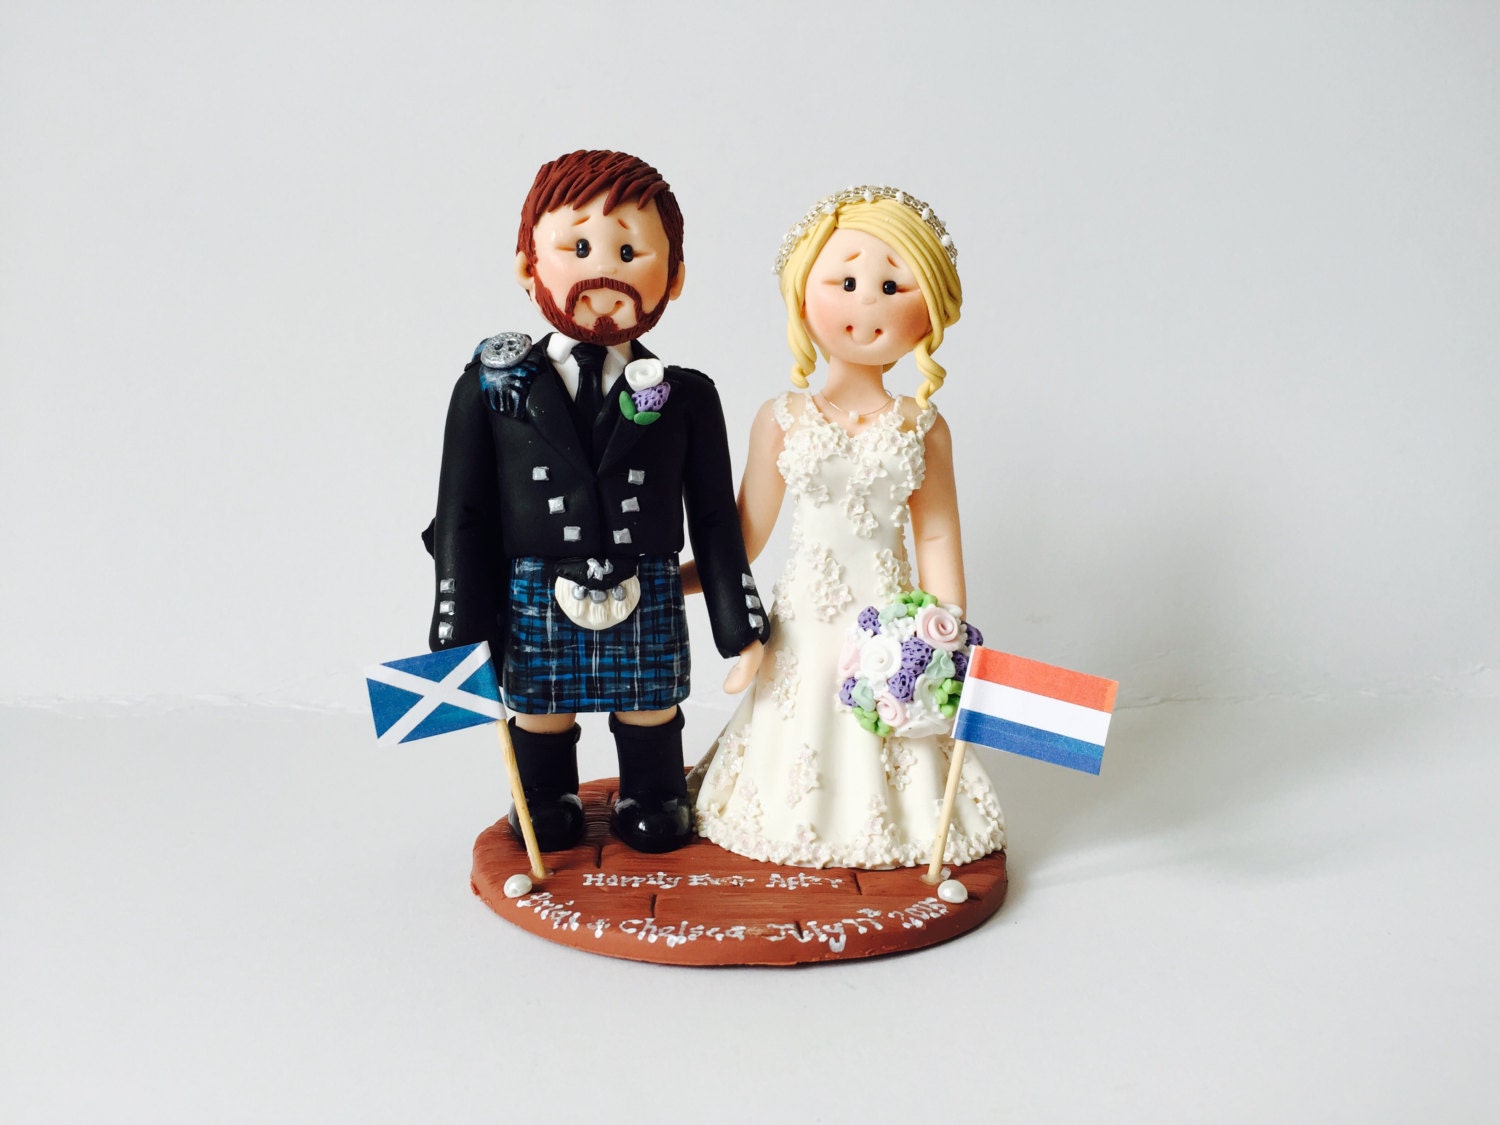 Scottish Groom in Tartan Kilt Wedding Cake Topper Custom